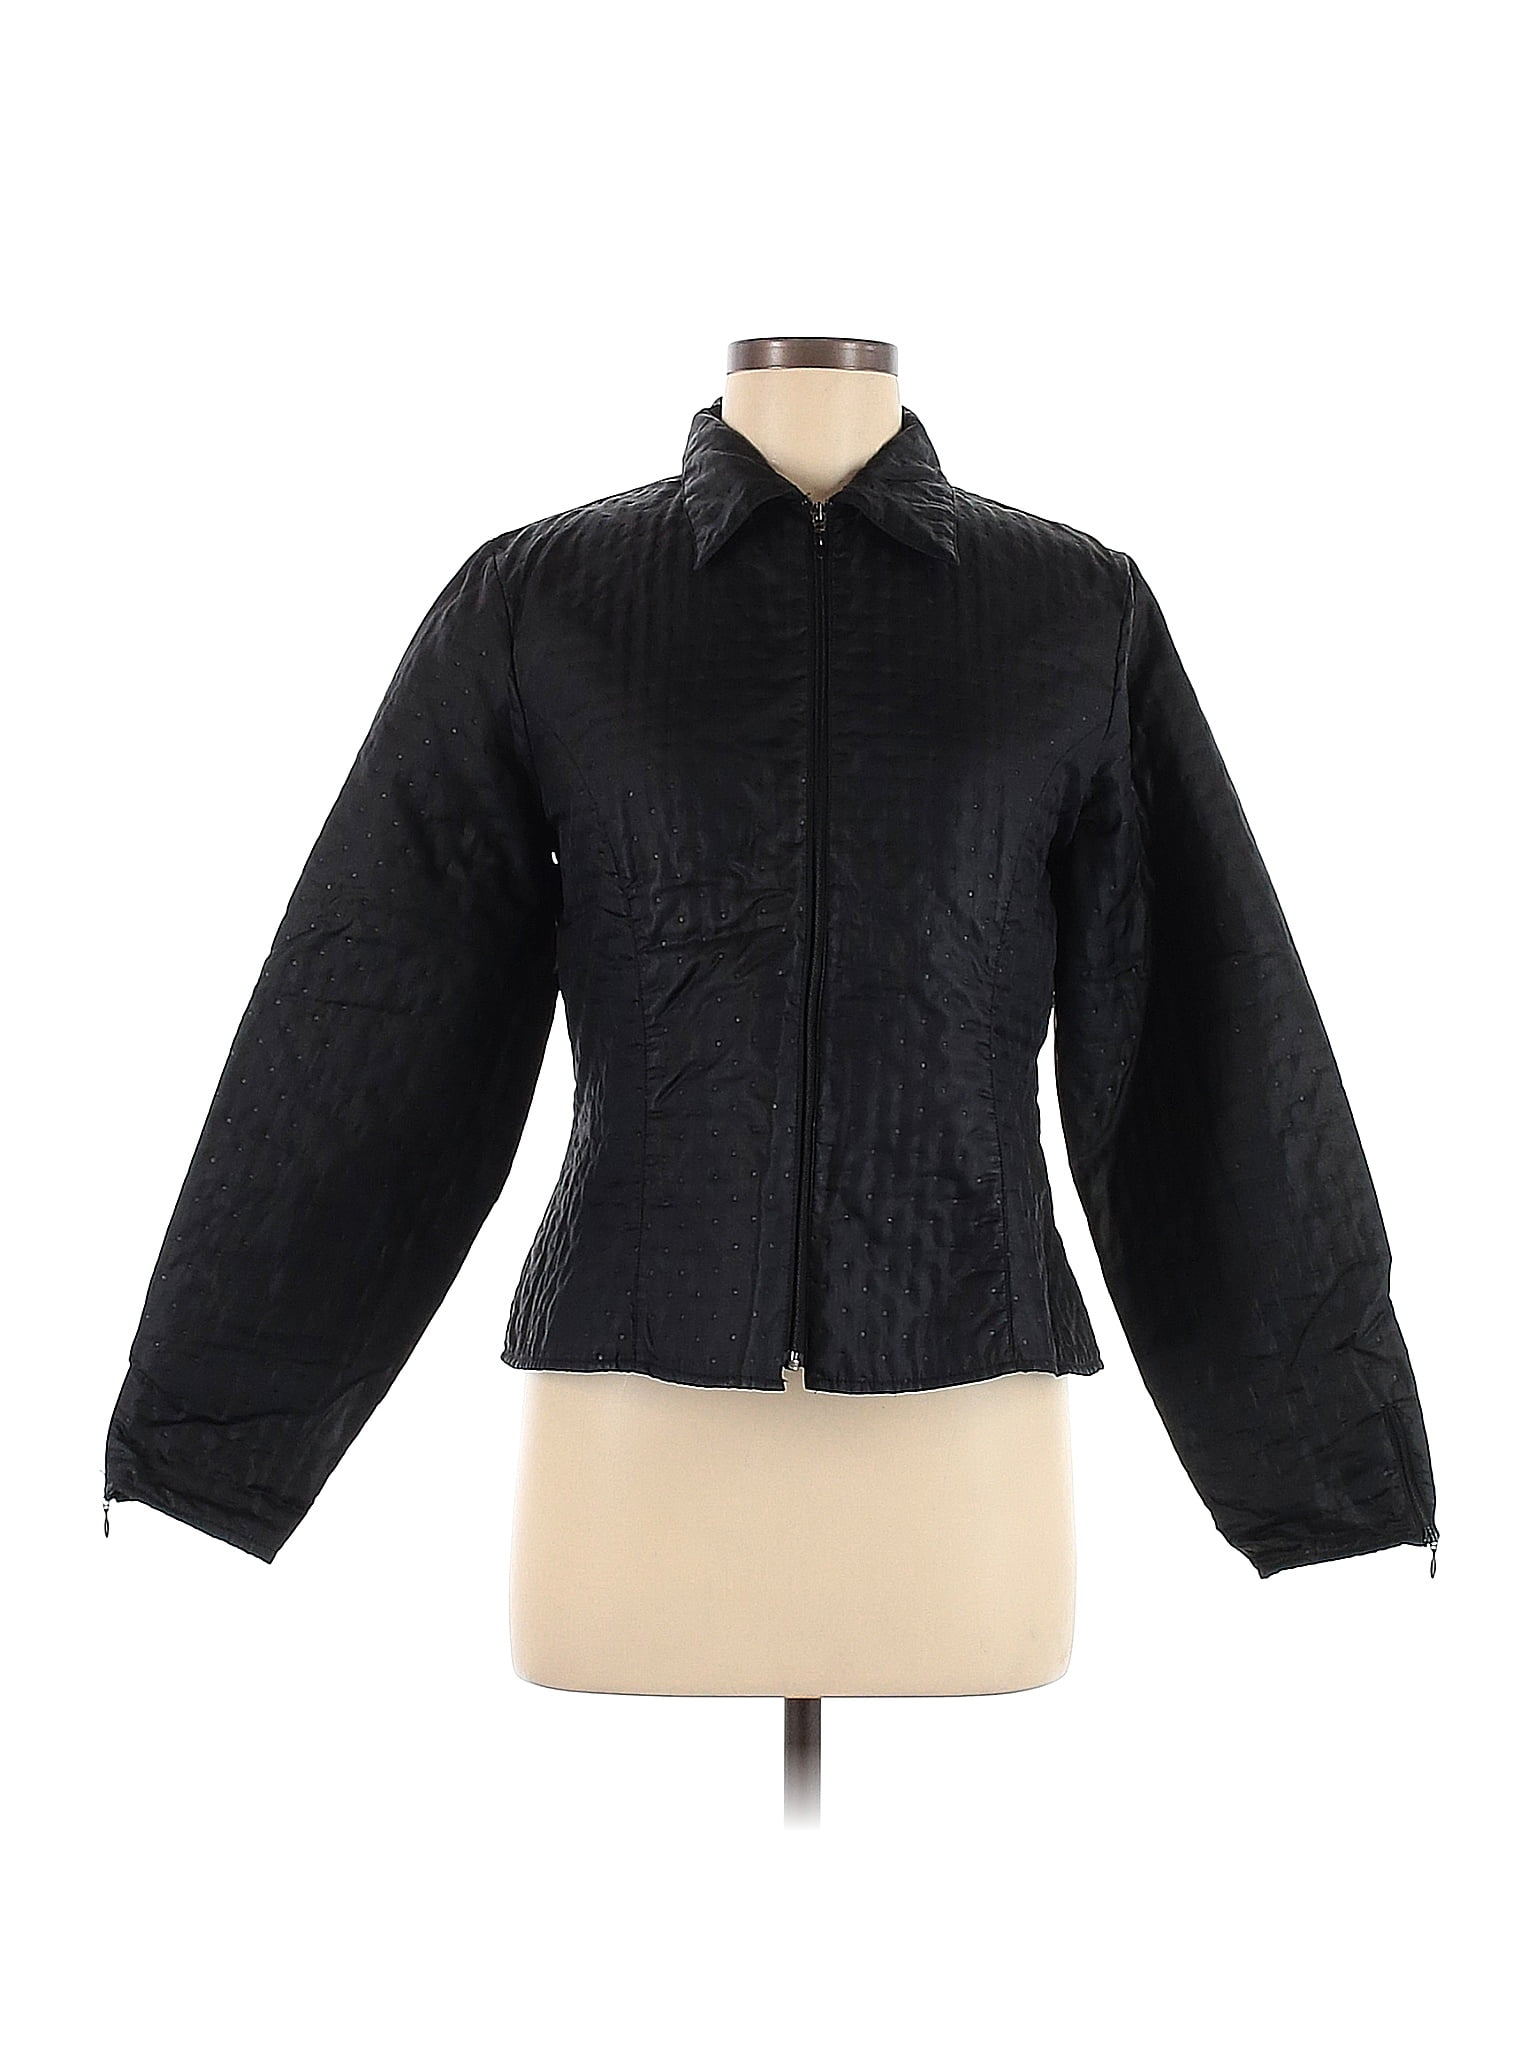 Anne Fontaine 100% Polyester Black Jacket Size Med (3) - 81% off | thredUP